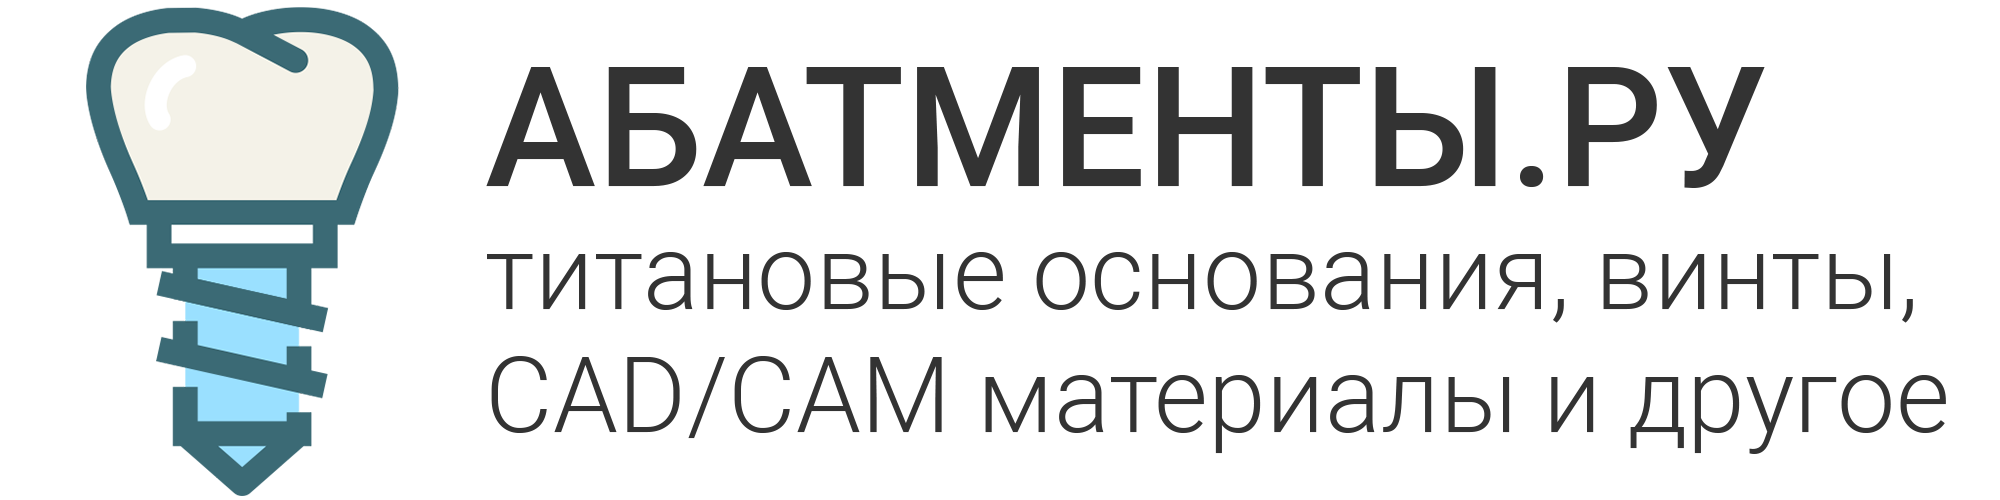 Abatmenty.ru